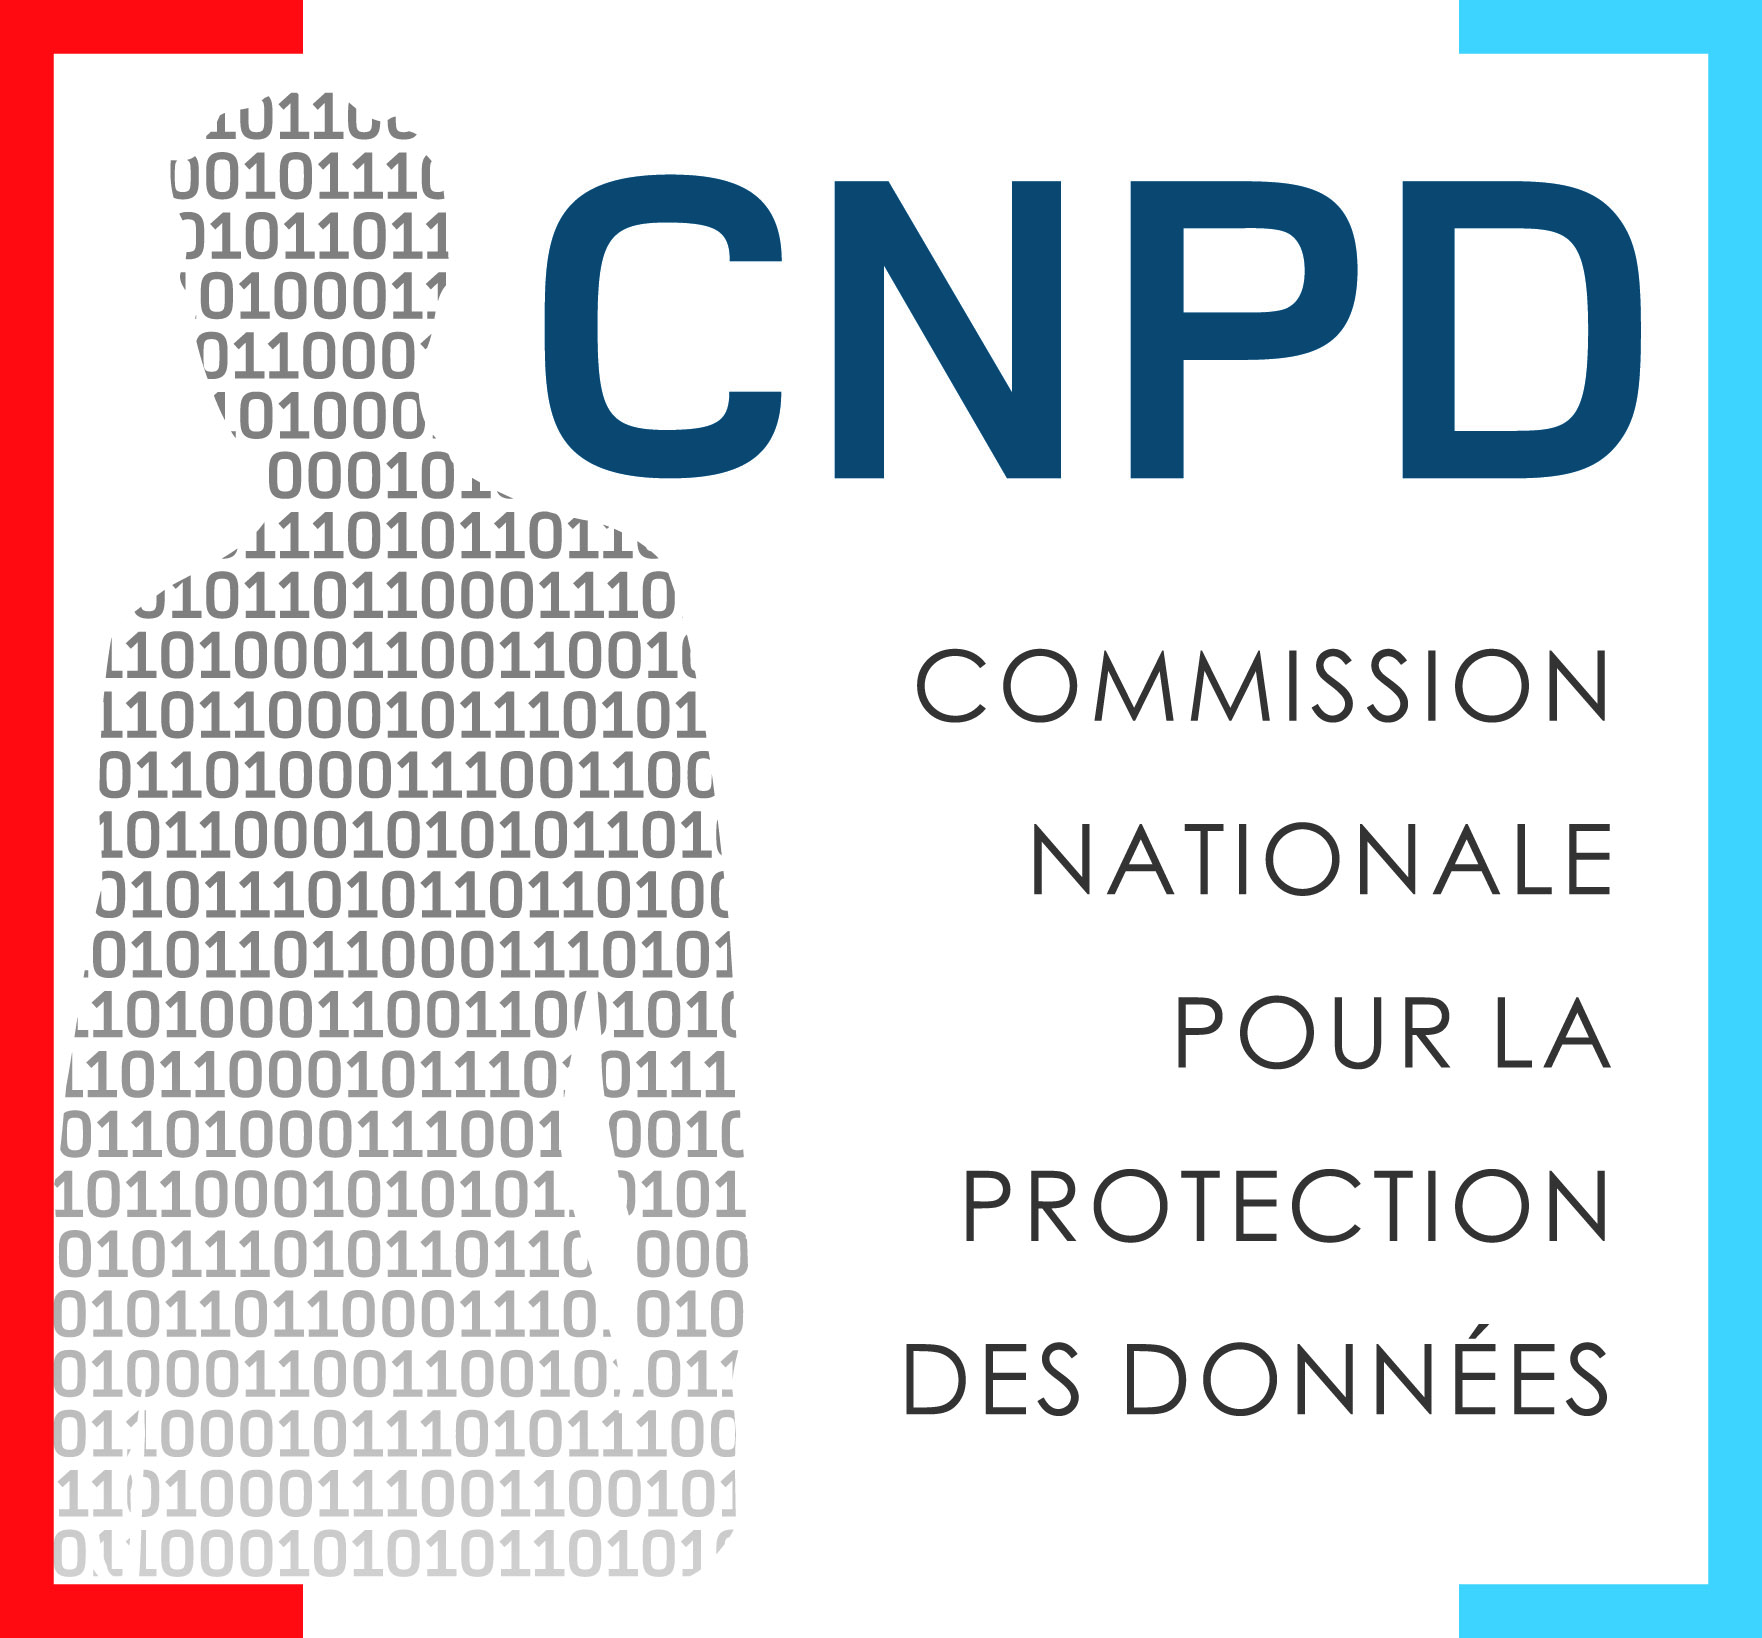 Commission nationale pour la protection des données (CNPD)